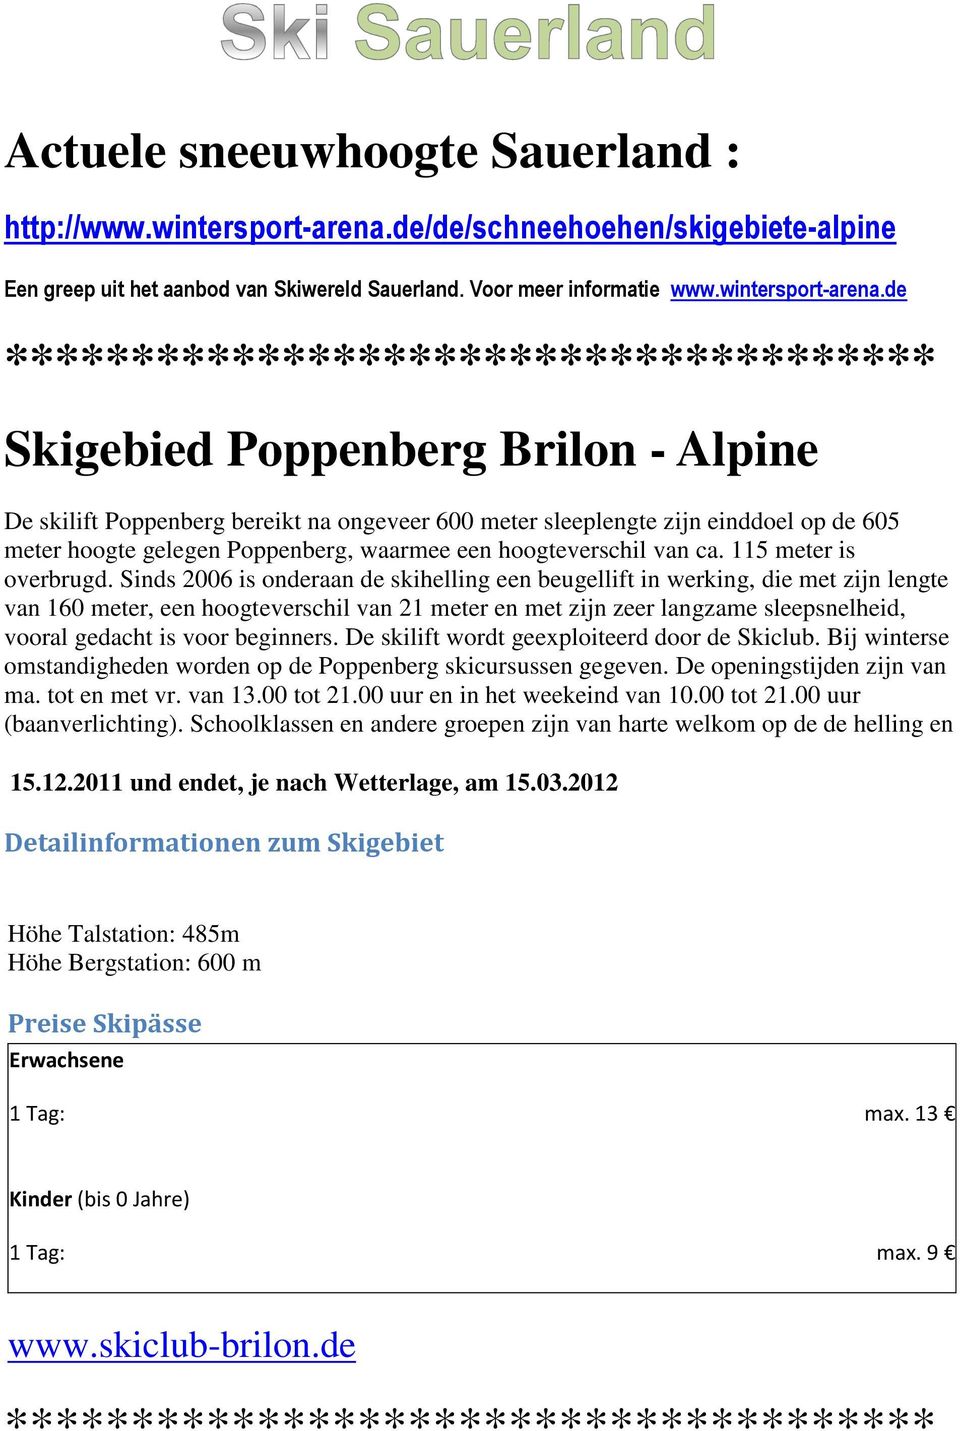 de ************************************* Skigebied Poppenberg Brilon - Alpine De skilift Poppenberg bereikt na ongeveer 600 meter sleeplengte zijn einddoel op de 605 meter hoogte gelegen Poppenberg,